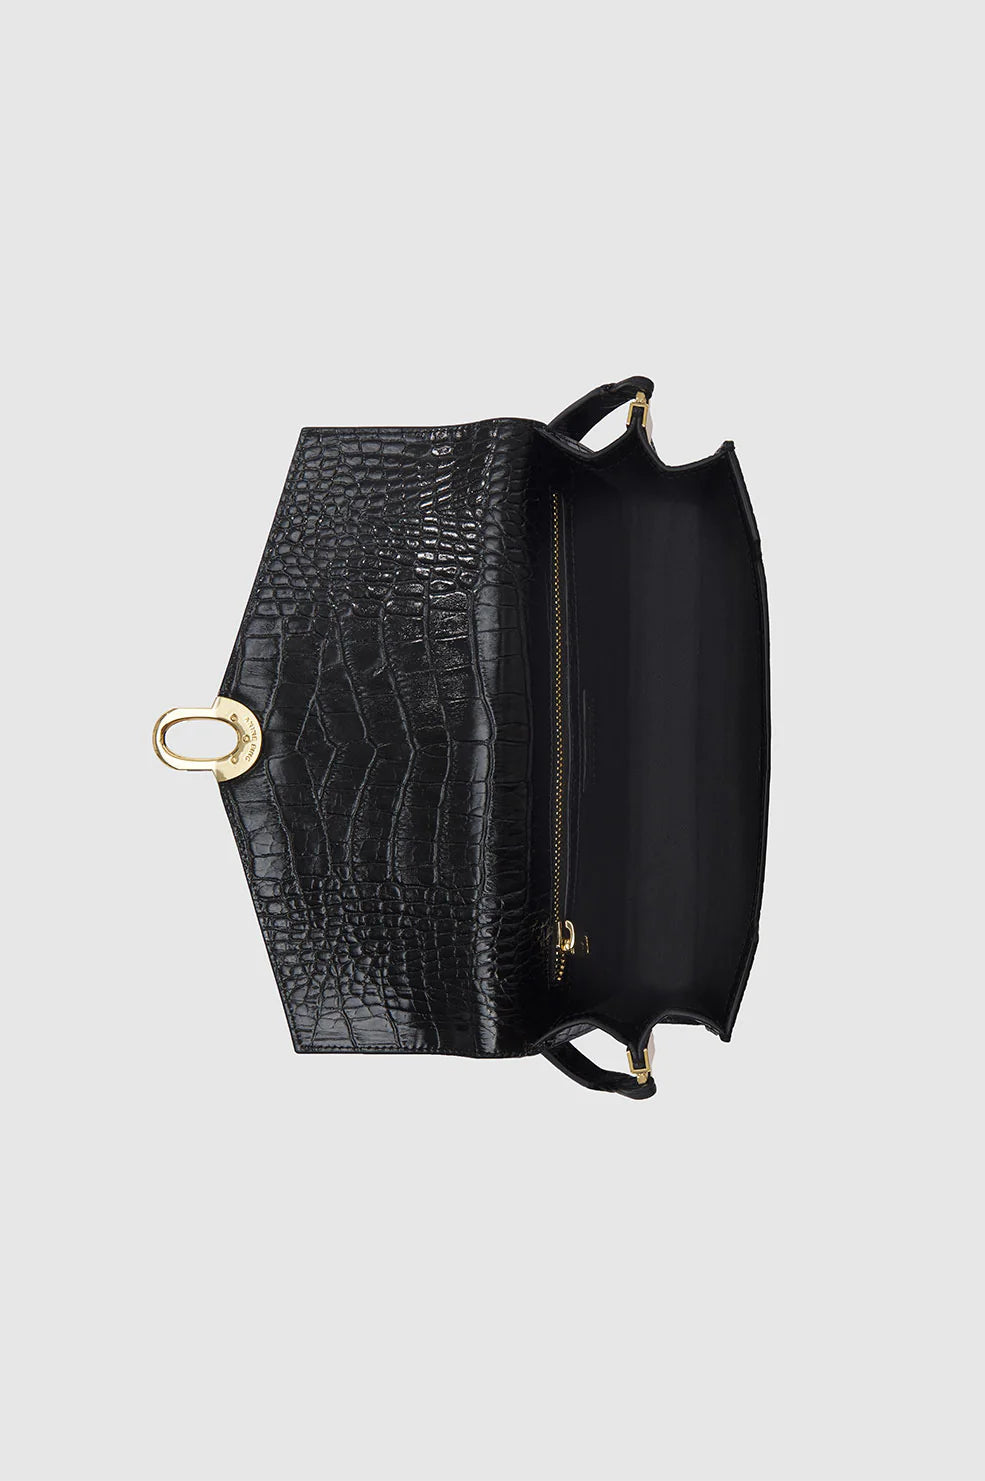 Colette shoulder bag, black embossed